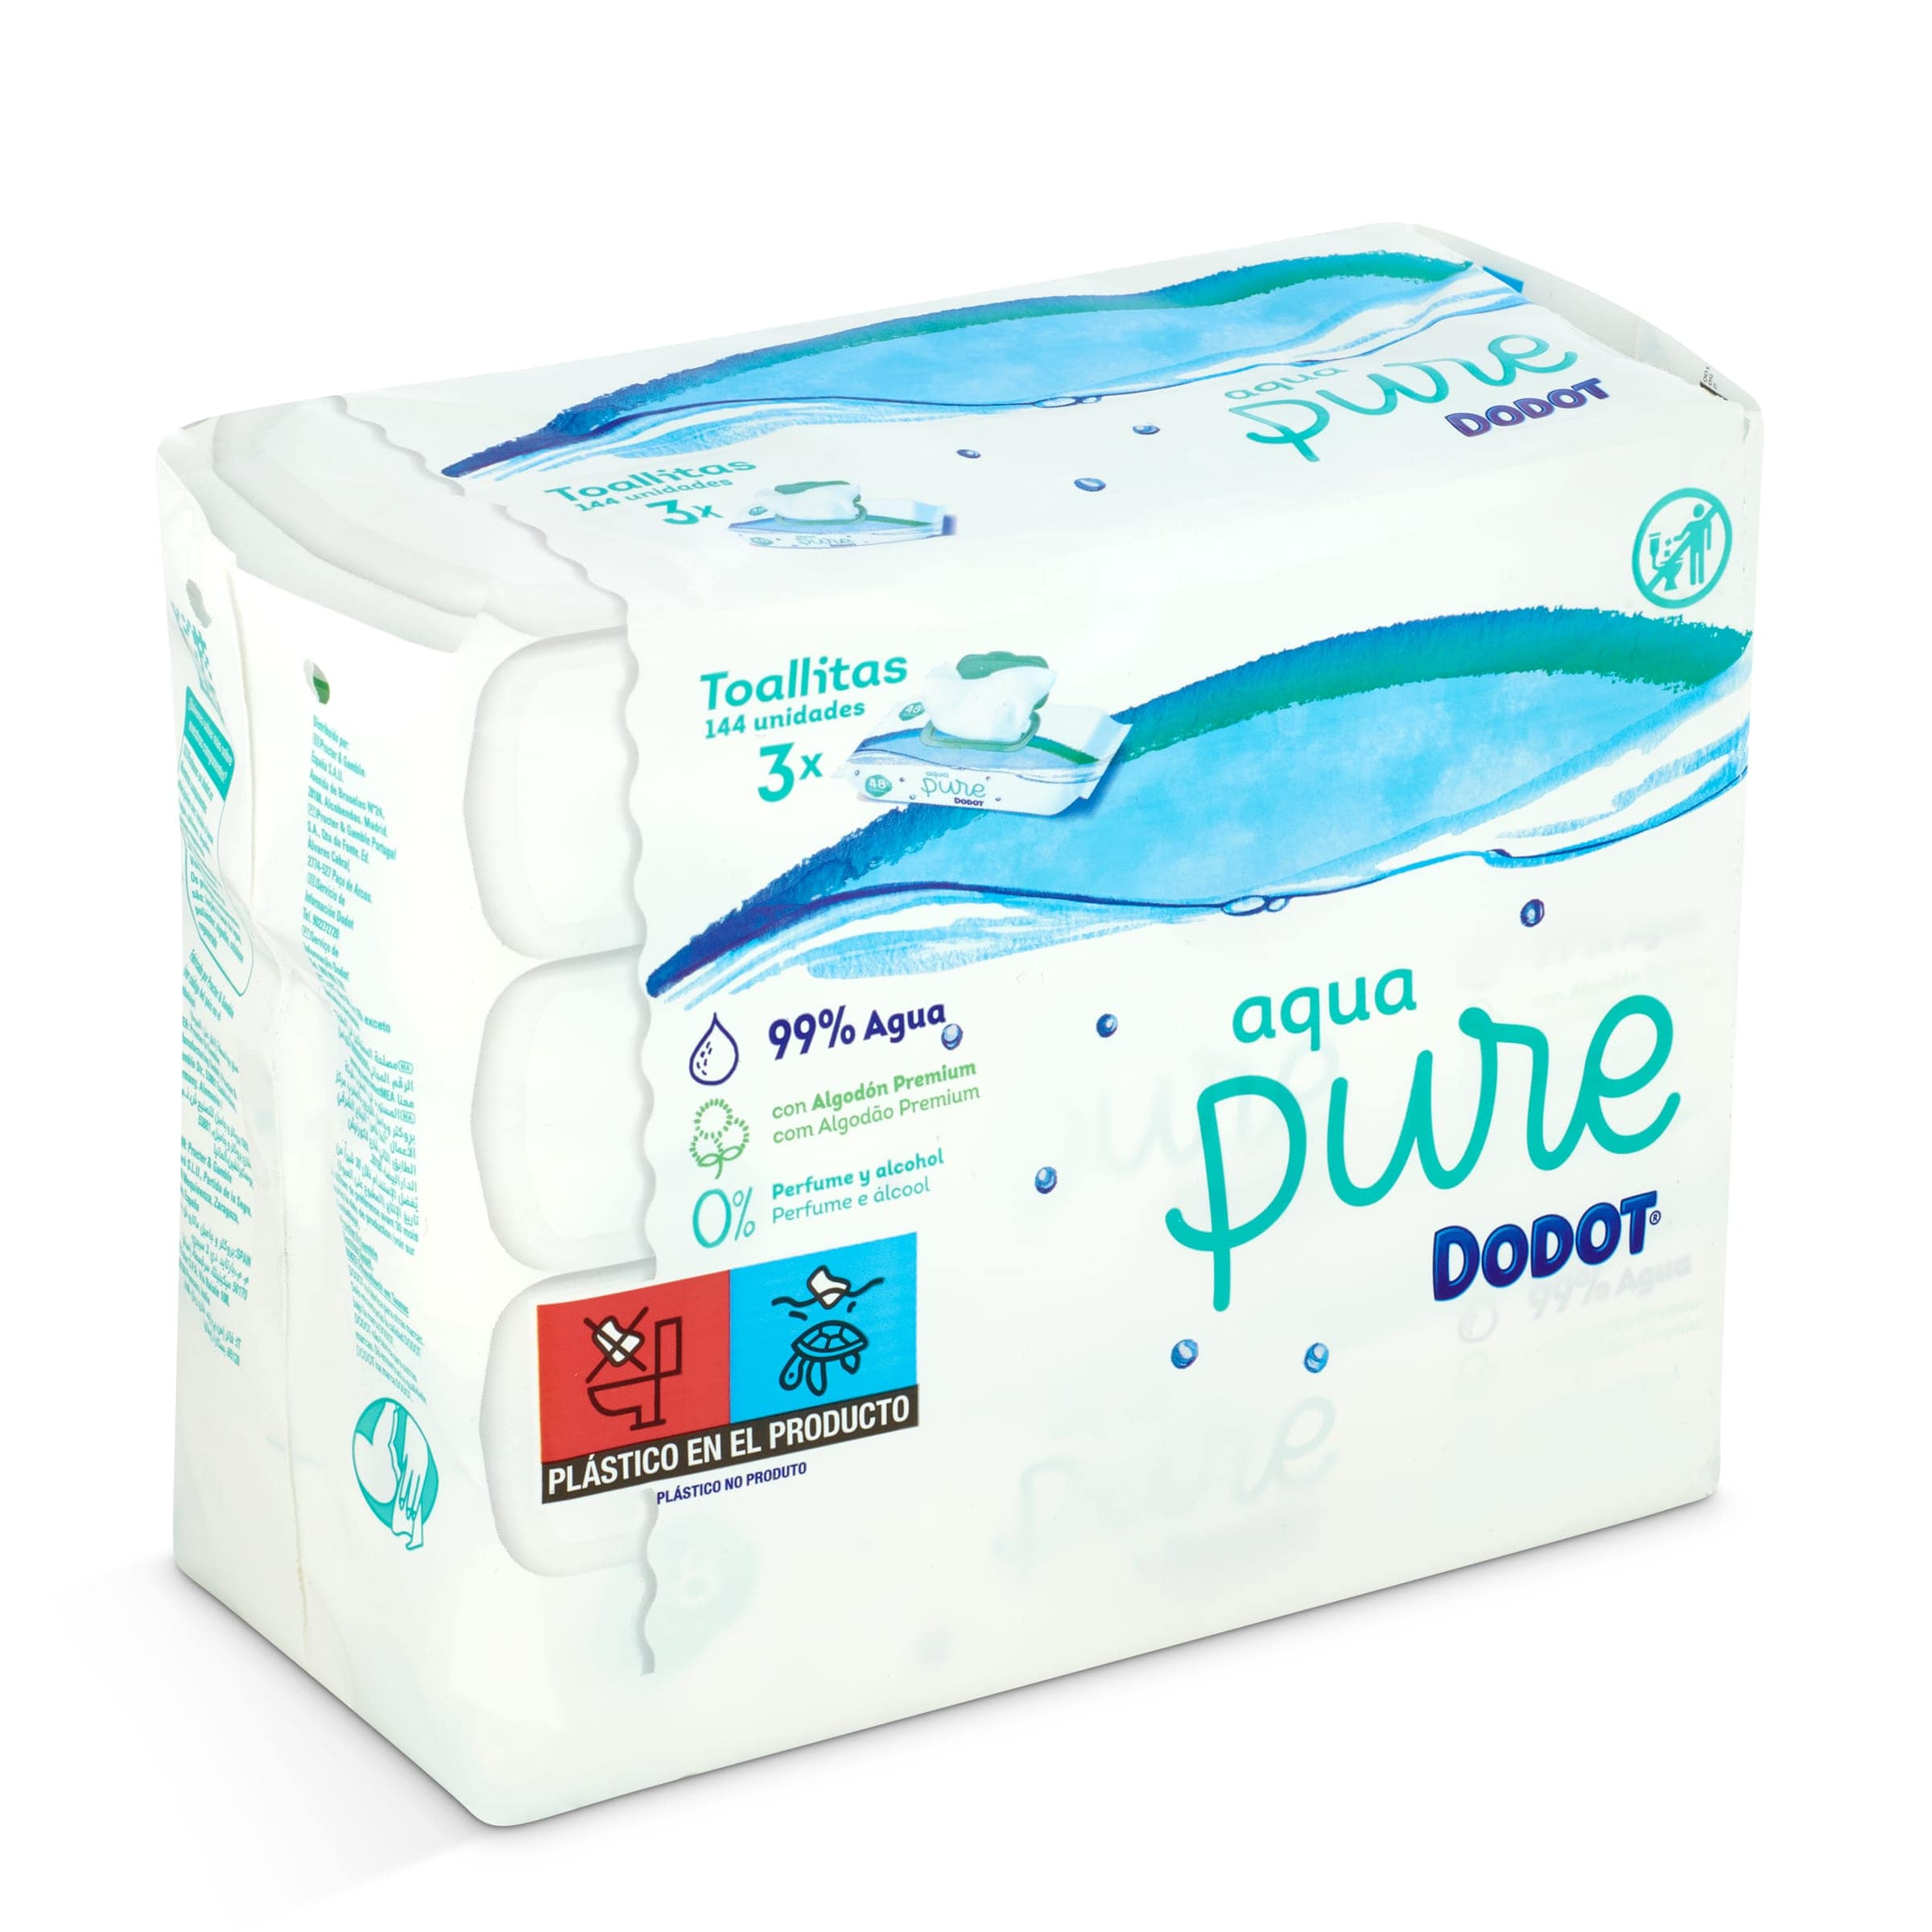 Compra Dodot Aqua Pure Toallitas 48 Unidades de algodón orgánico